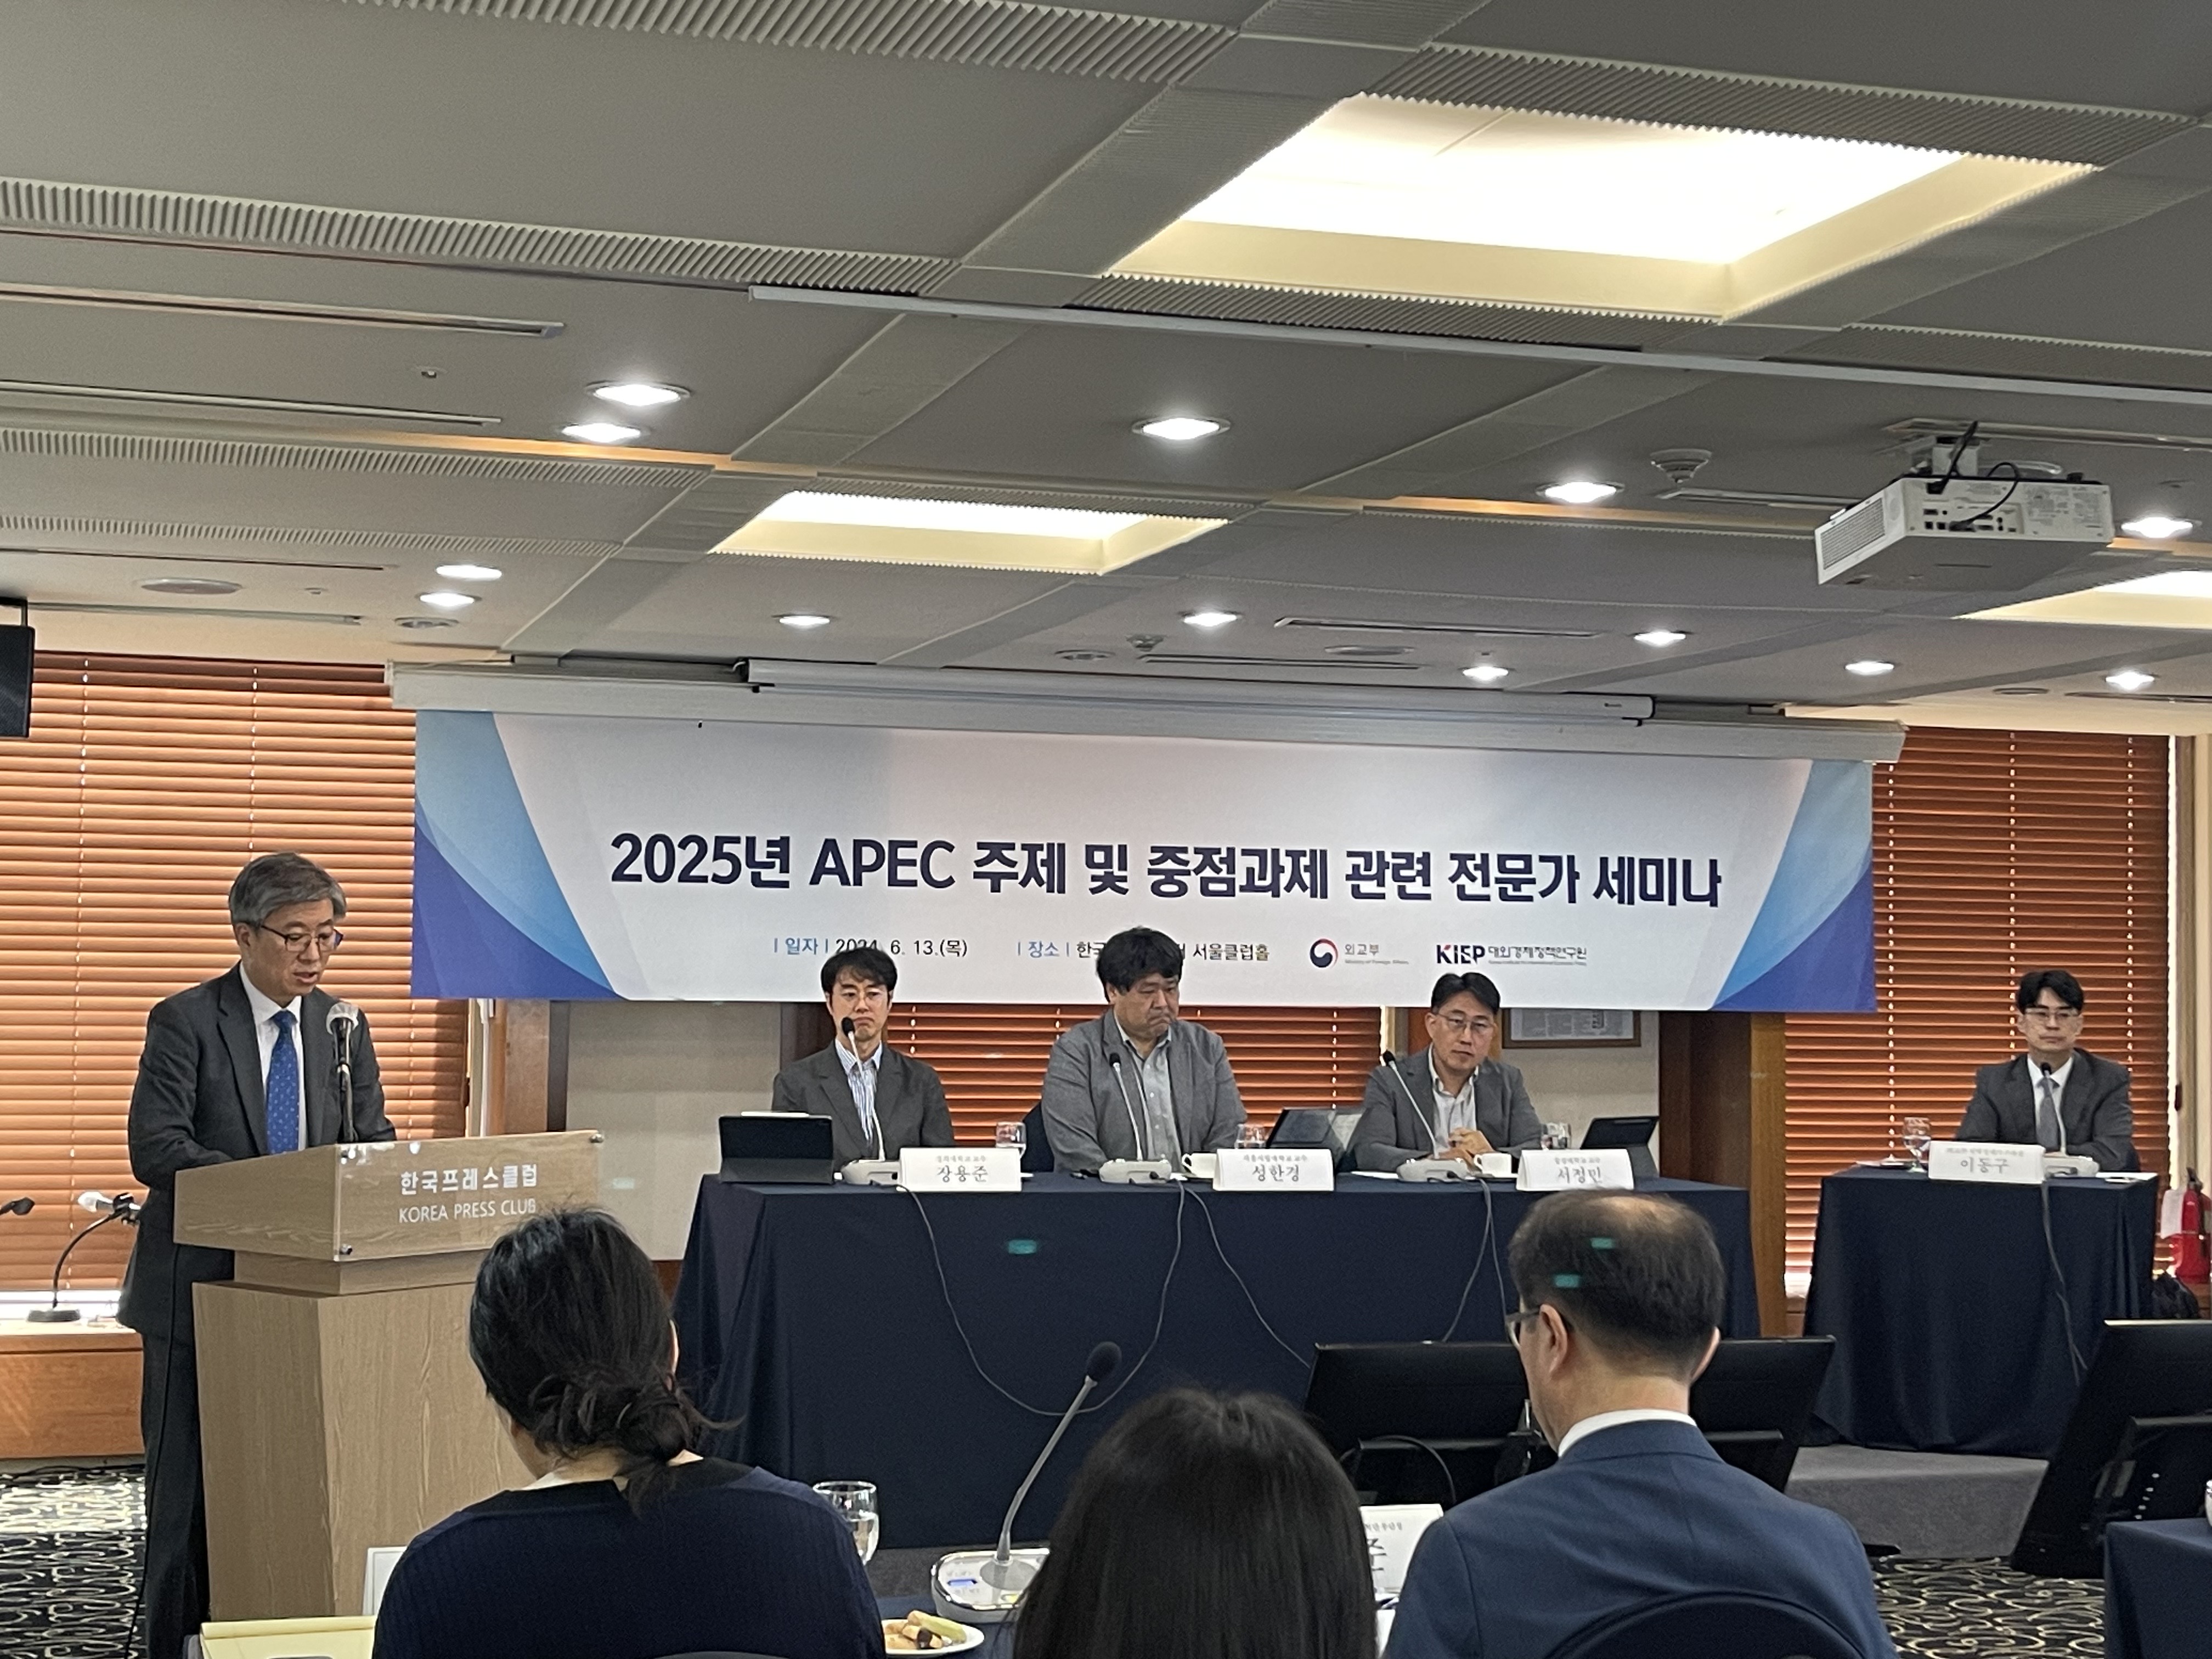 2025 APEC 주제 및 중점과제 관련 전문가 세미나(6.13.) 개최